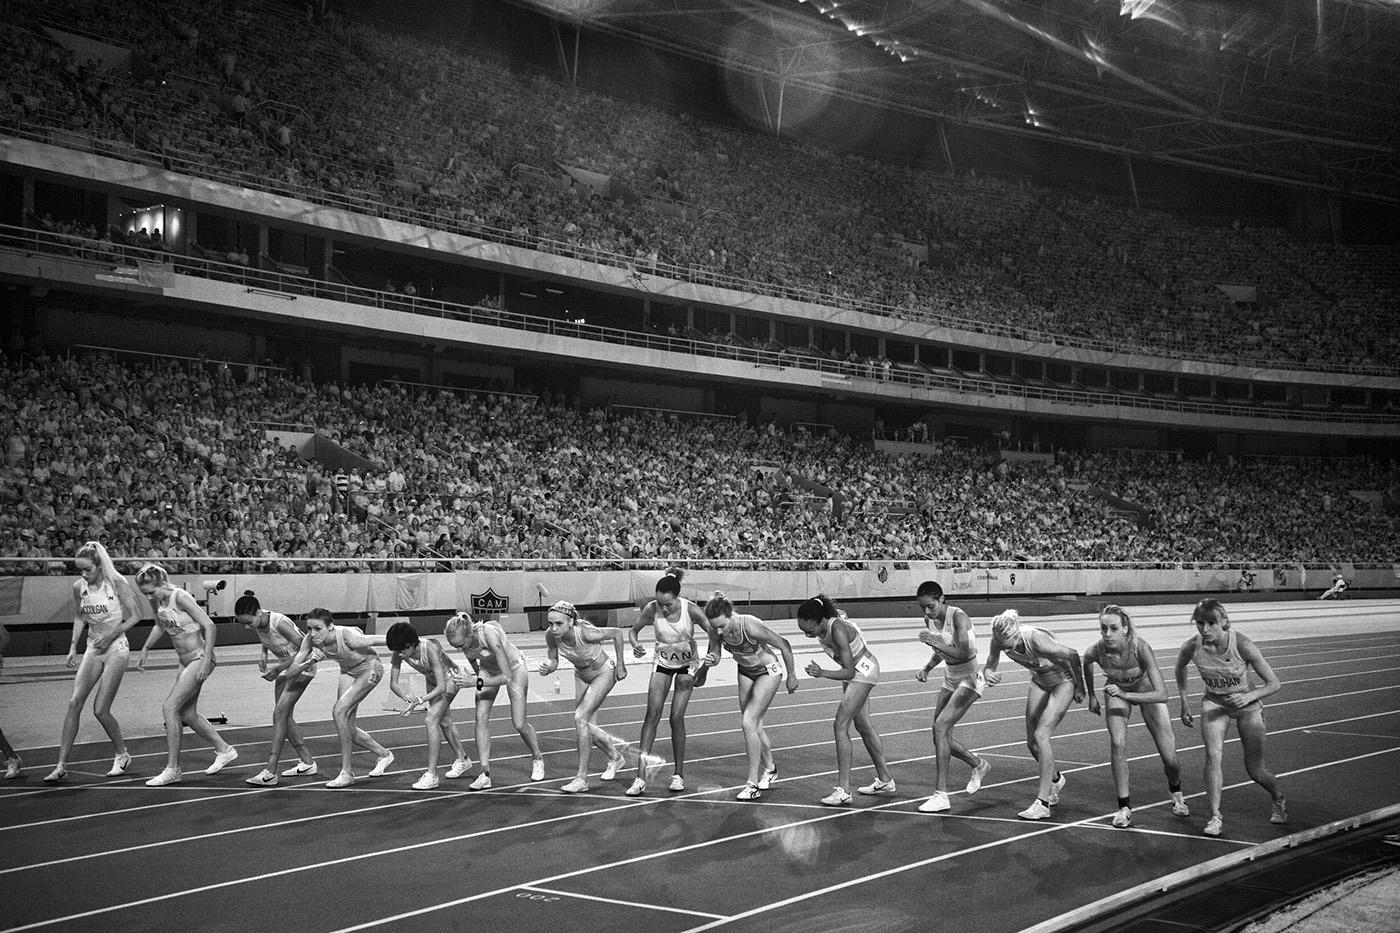 Start of Womens 5k: Each runner has her own Style at the start
 : Rio Olymplcs 2016 : David Burnett | Photographer